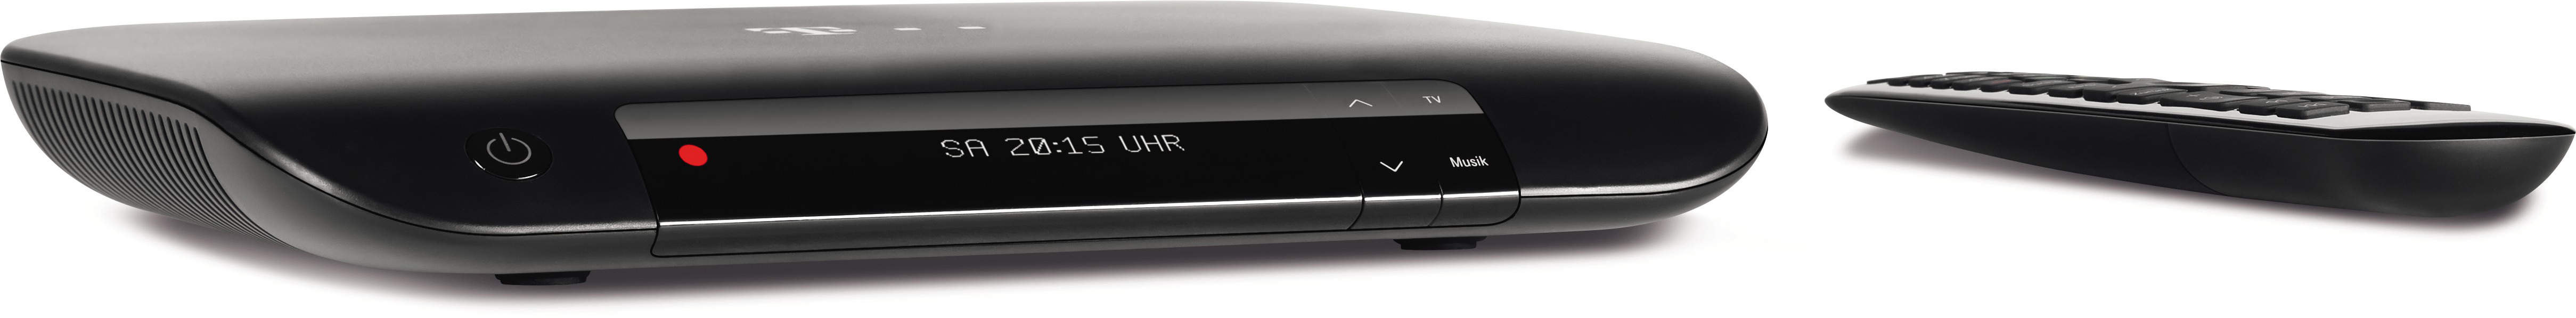 TELEKOM 401 Ultra-HD-Receiver mit (Schwarz) Festplattenrekorder